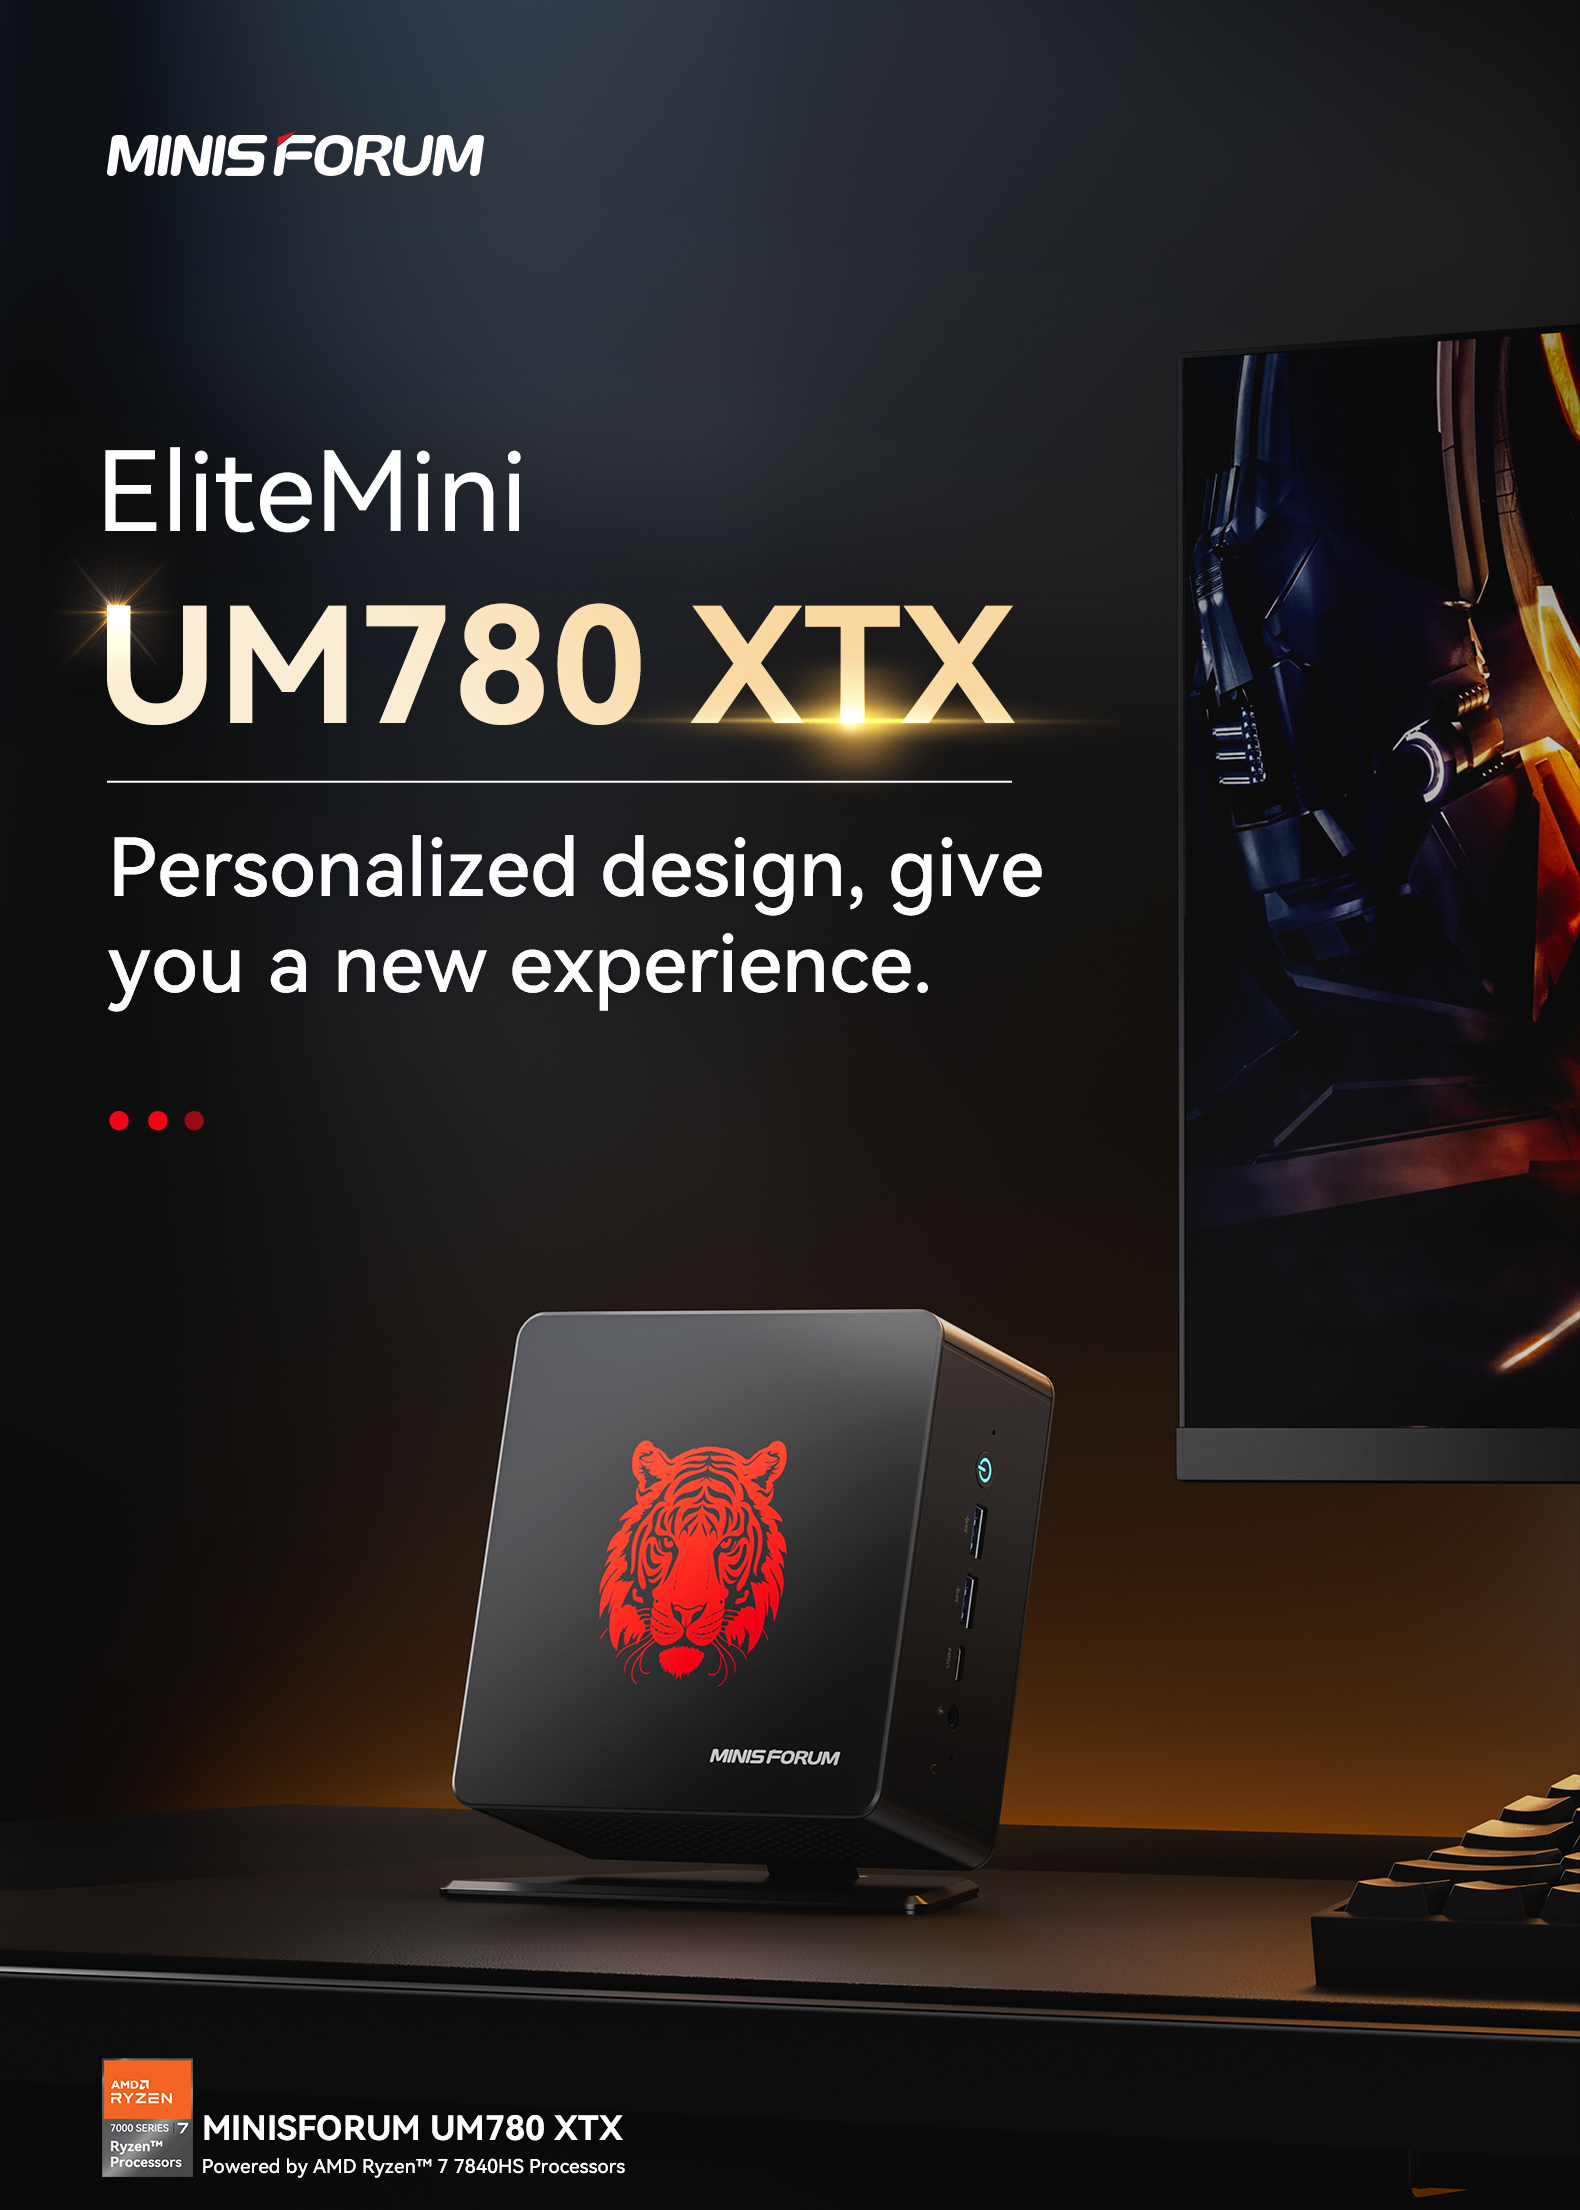 MINISFORUM Launches EliteMini UM780 XTX Mini PC